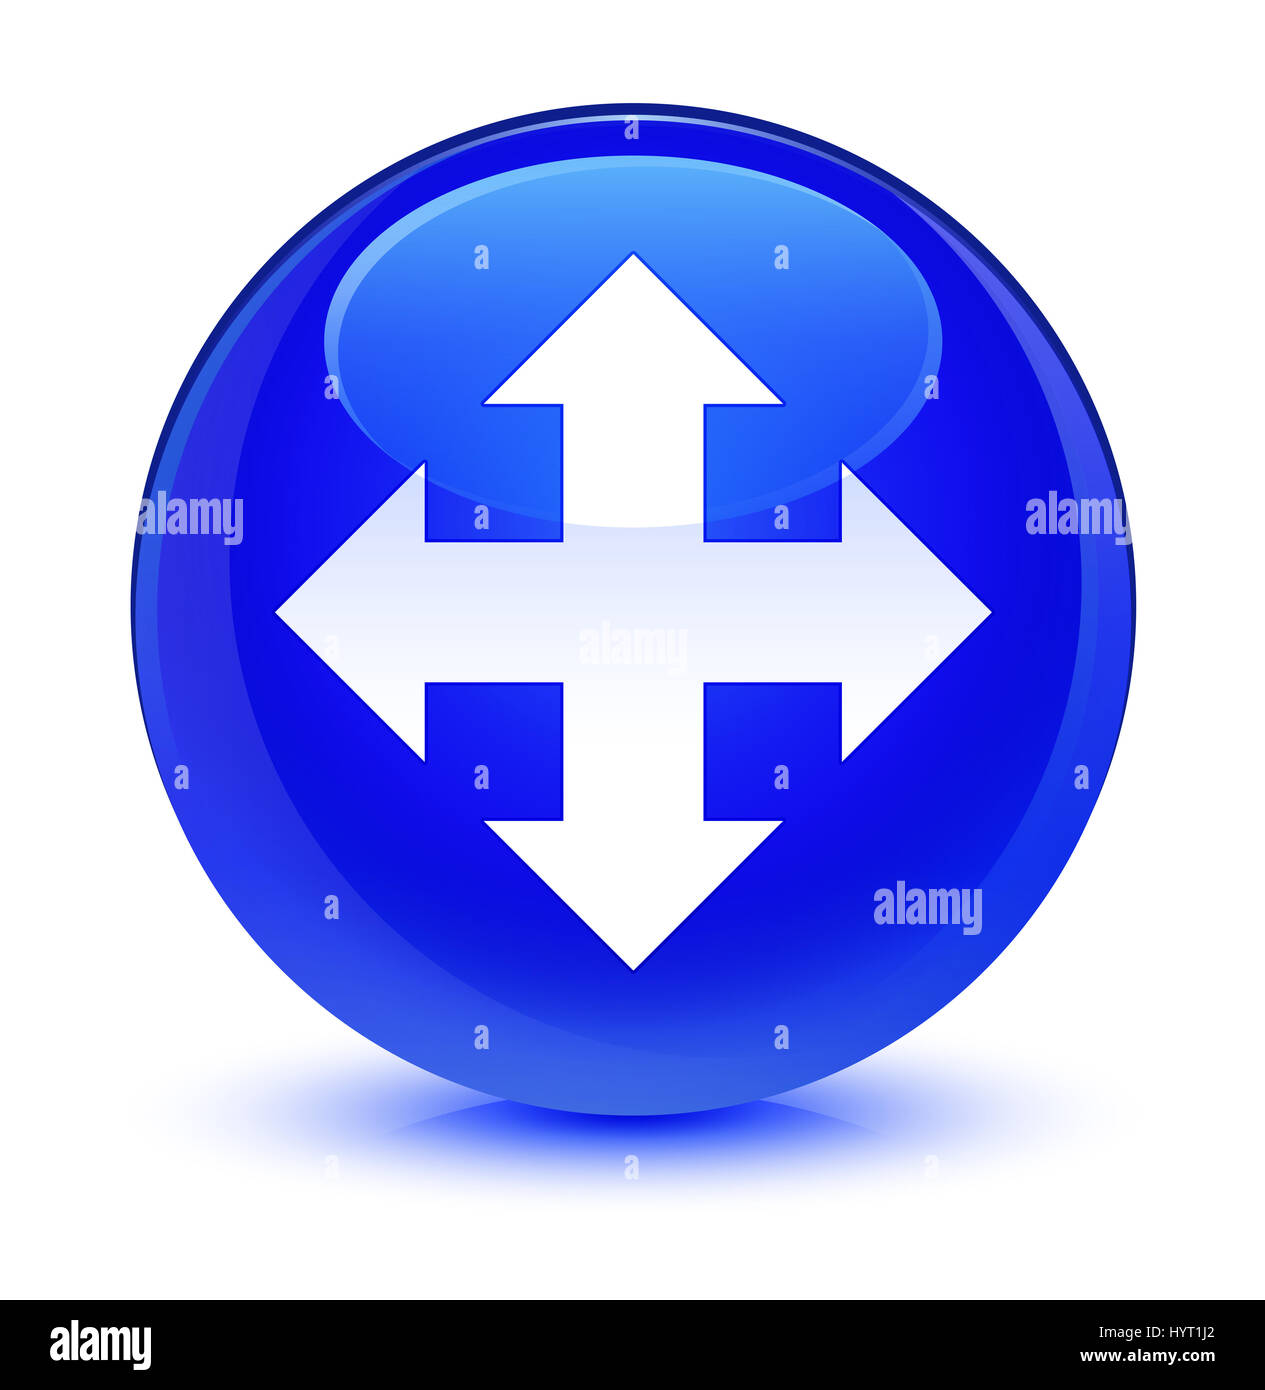 L'icône Déplacer isolé sur le bouton rond bleu vitreux abstract illustration Banque D'Images